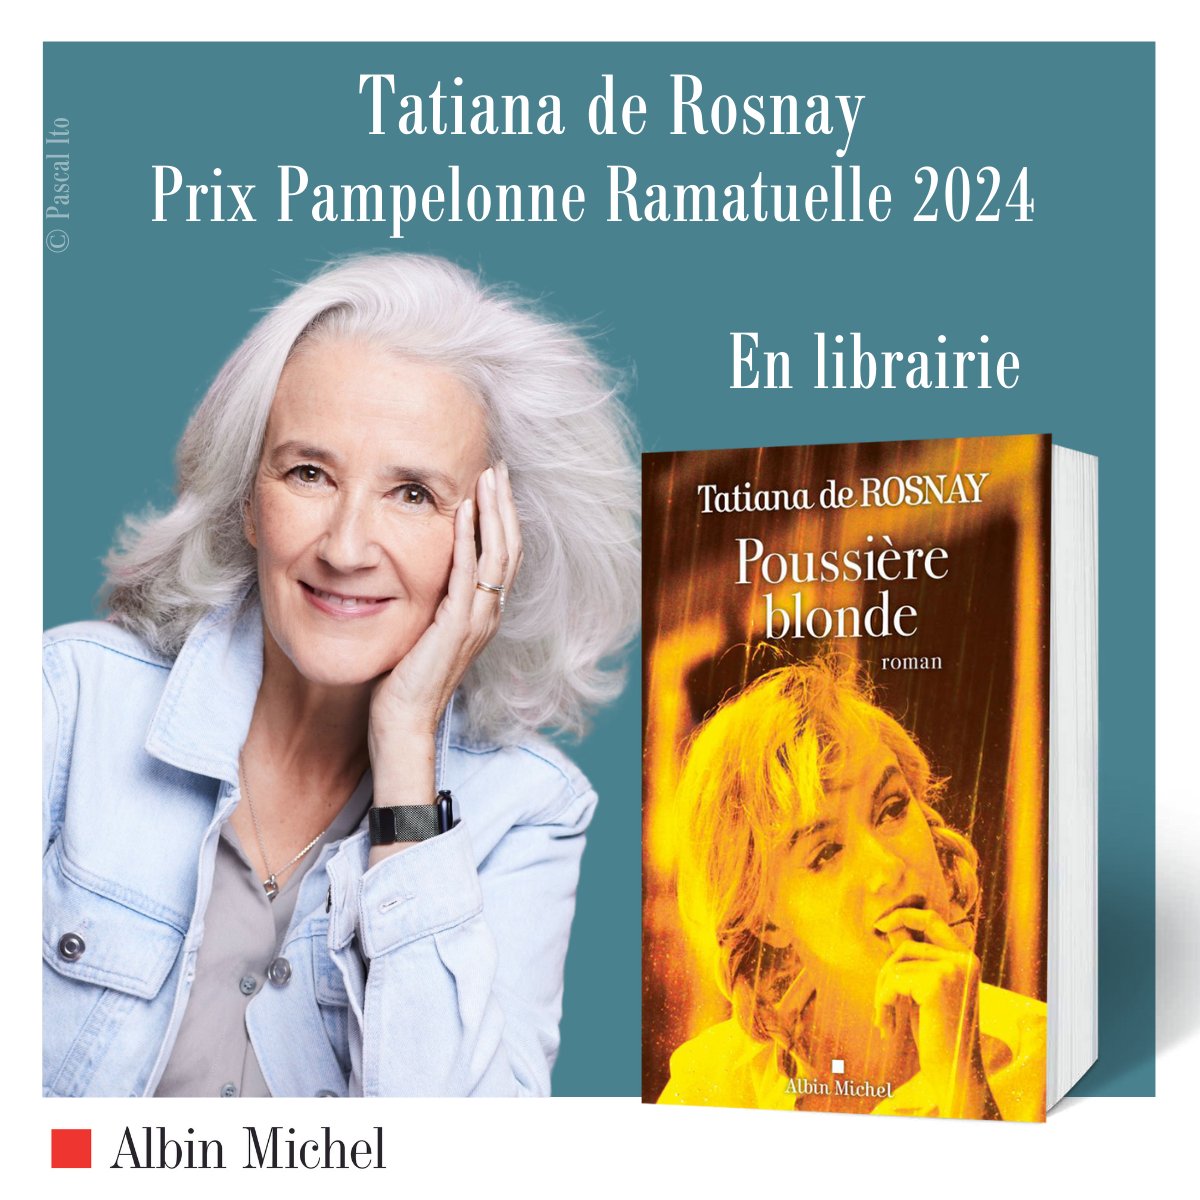 🎉📖 Félicitations à @tatianaderosnay, lauréate du #PrixPampelonneRamatuelle2024 pour son roman 'Poussière blonde', disponible en librairie ! 📚🥰 #AlbinMichel